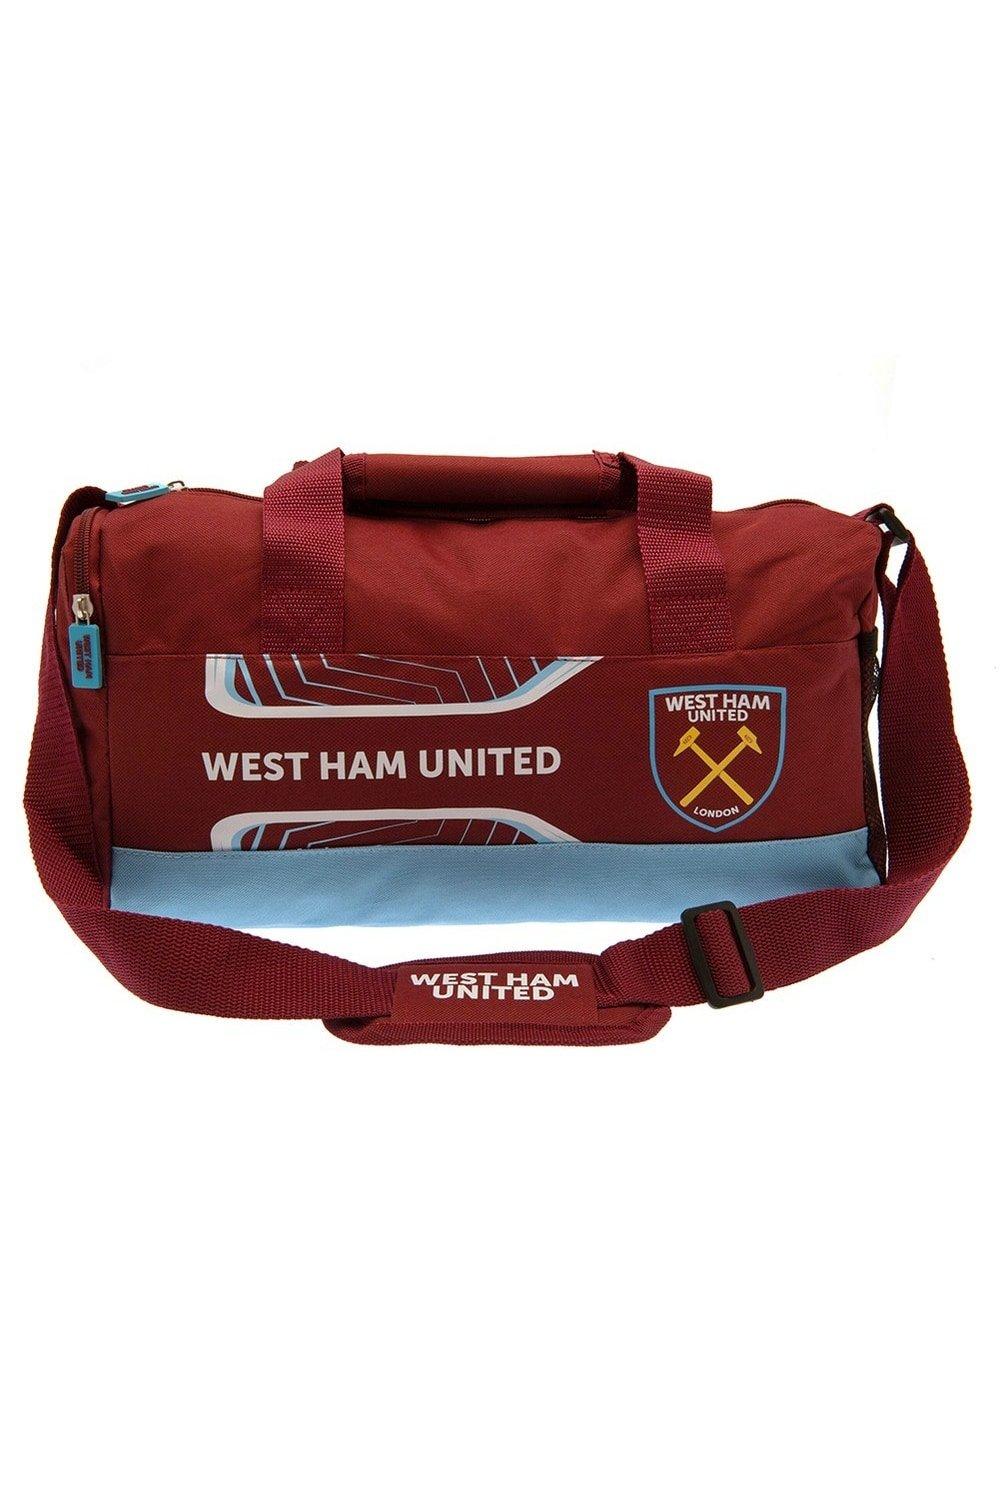 Спортивная сумка Flash West Ham United FC, красный спортивная сумка манчестер юнайтед manchester united fc красный